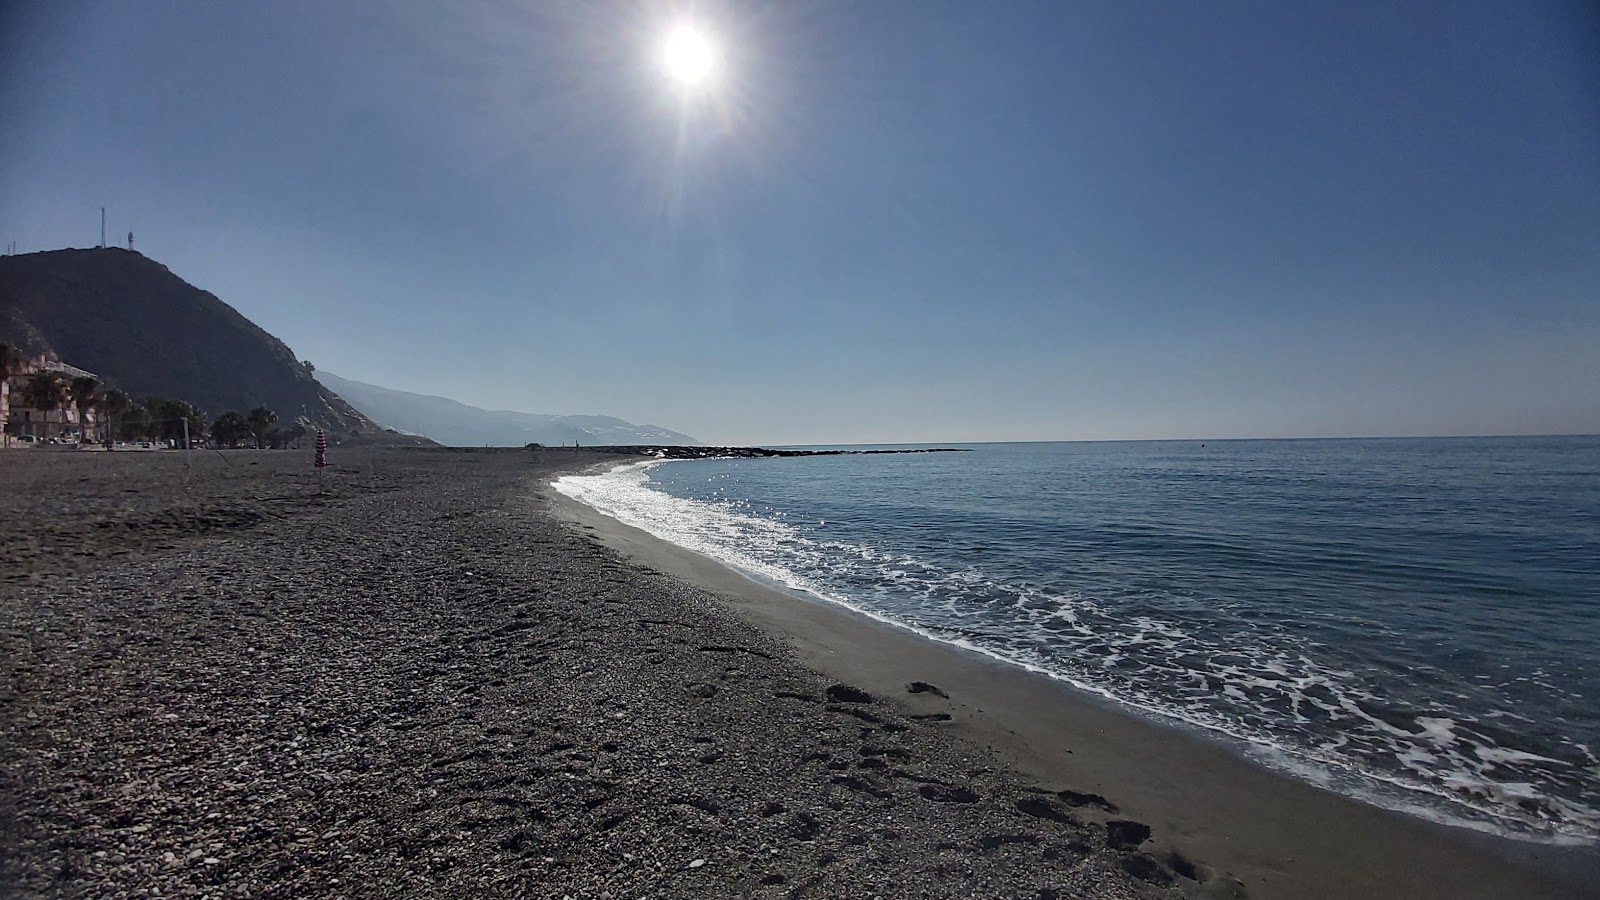 Foto af La MamoLa beach - populært sted blandt afslapningskendere